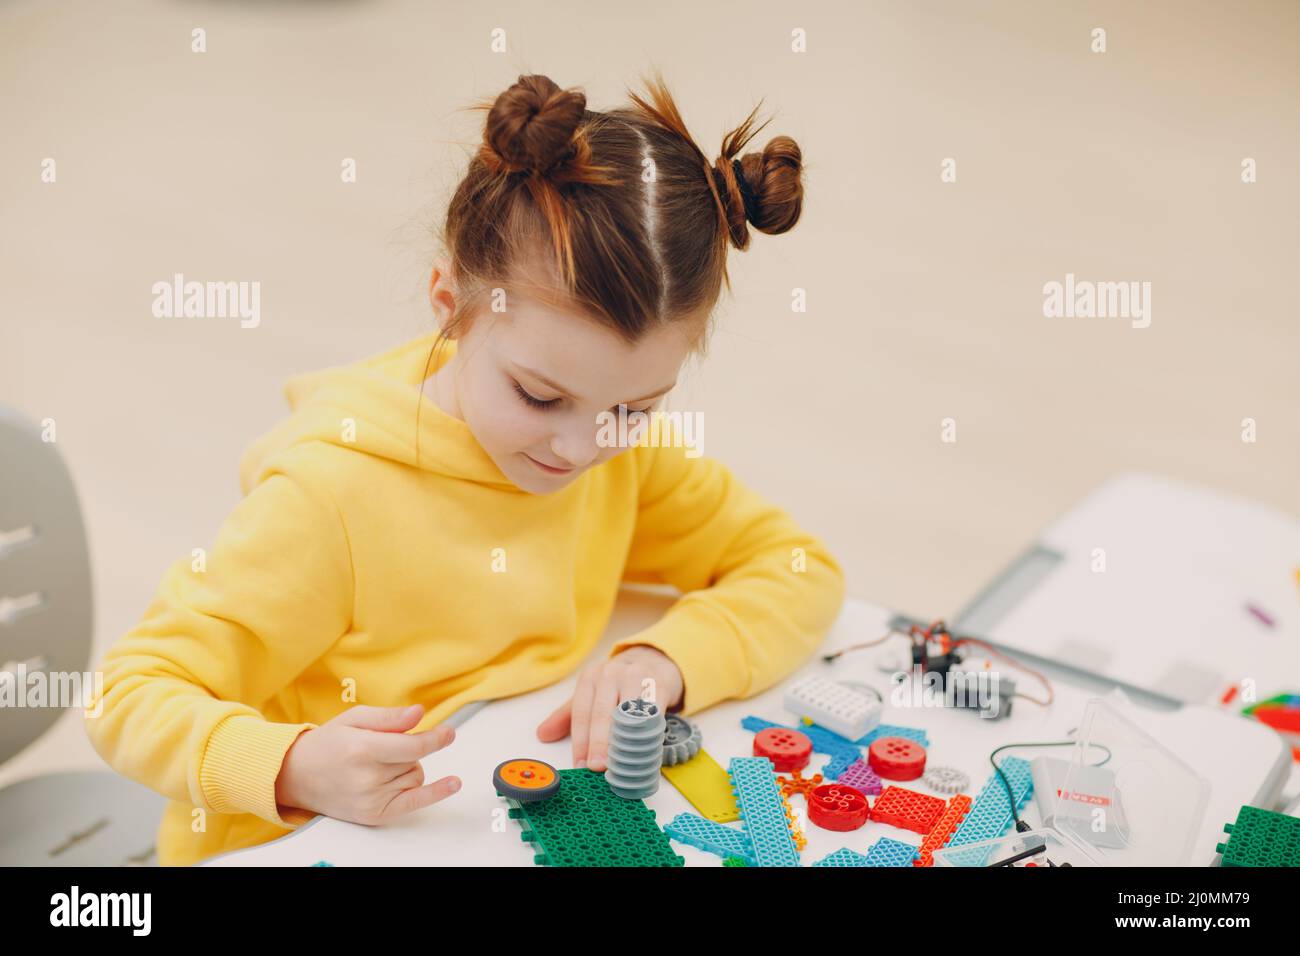 Kleines Mädchen Kind Kind Konstruktor Überprüfung technische Spielzeug. Kinder Robotics Konstruktor montieren Roboter. Stockfoto